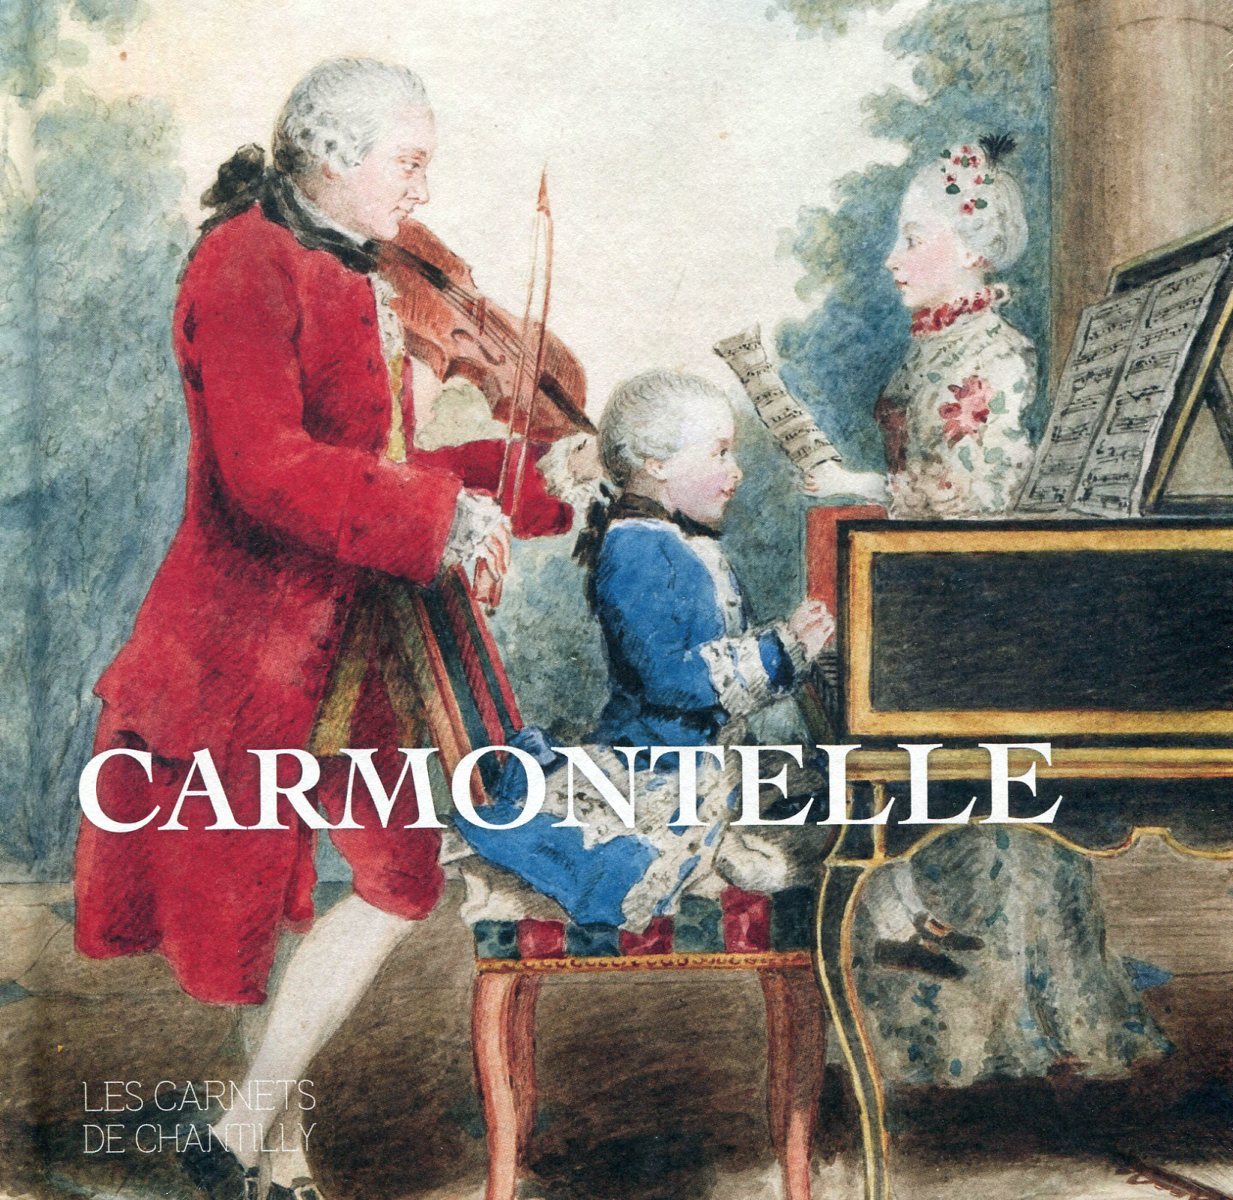 Carmontelle, (Les Carnets de Chantilly), 2020, 96 p.